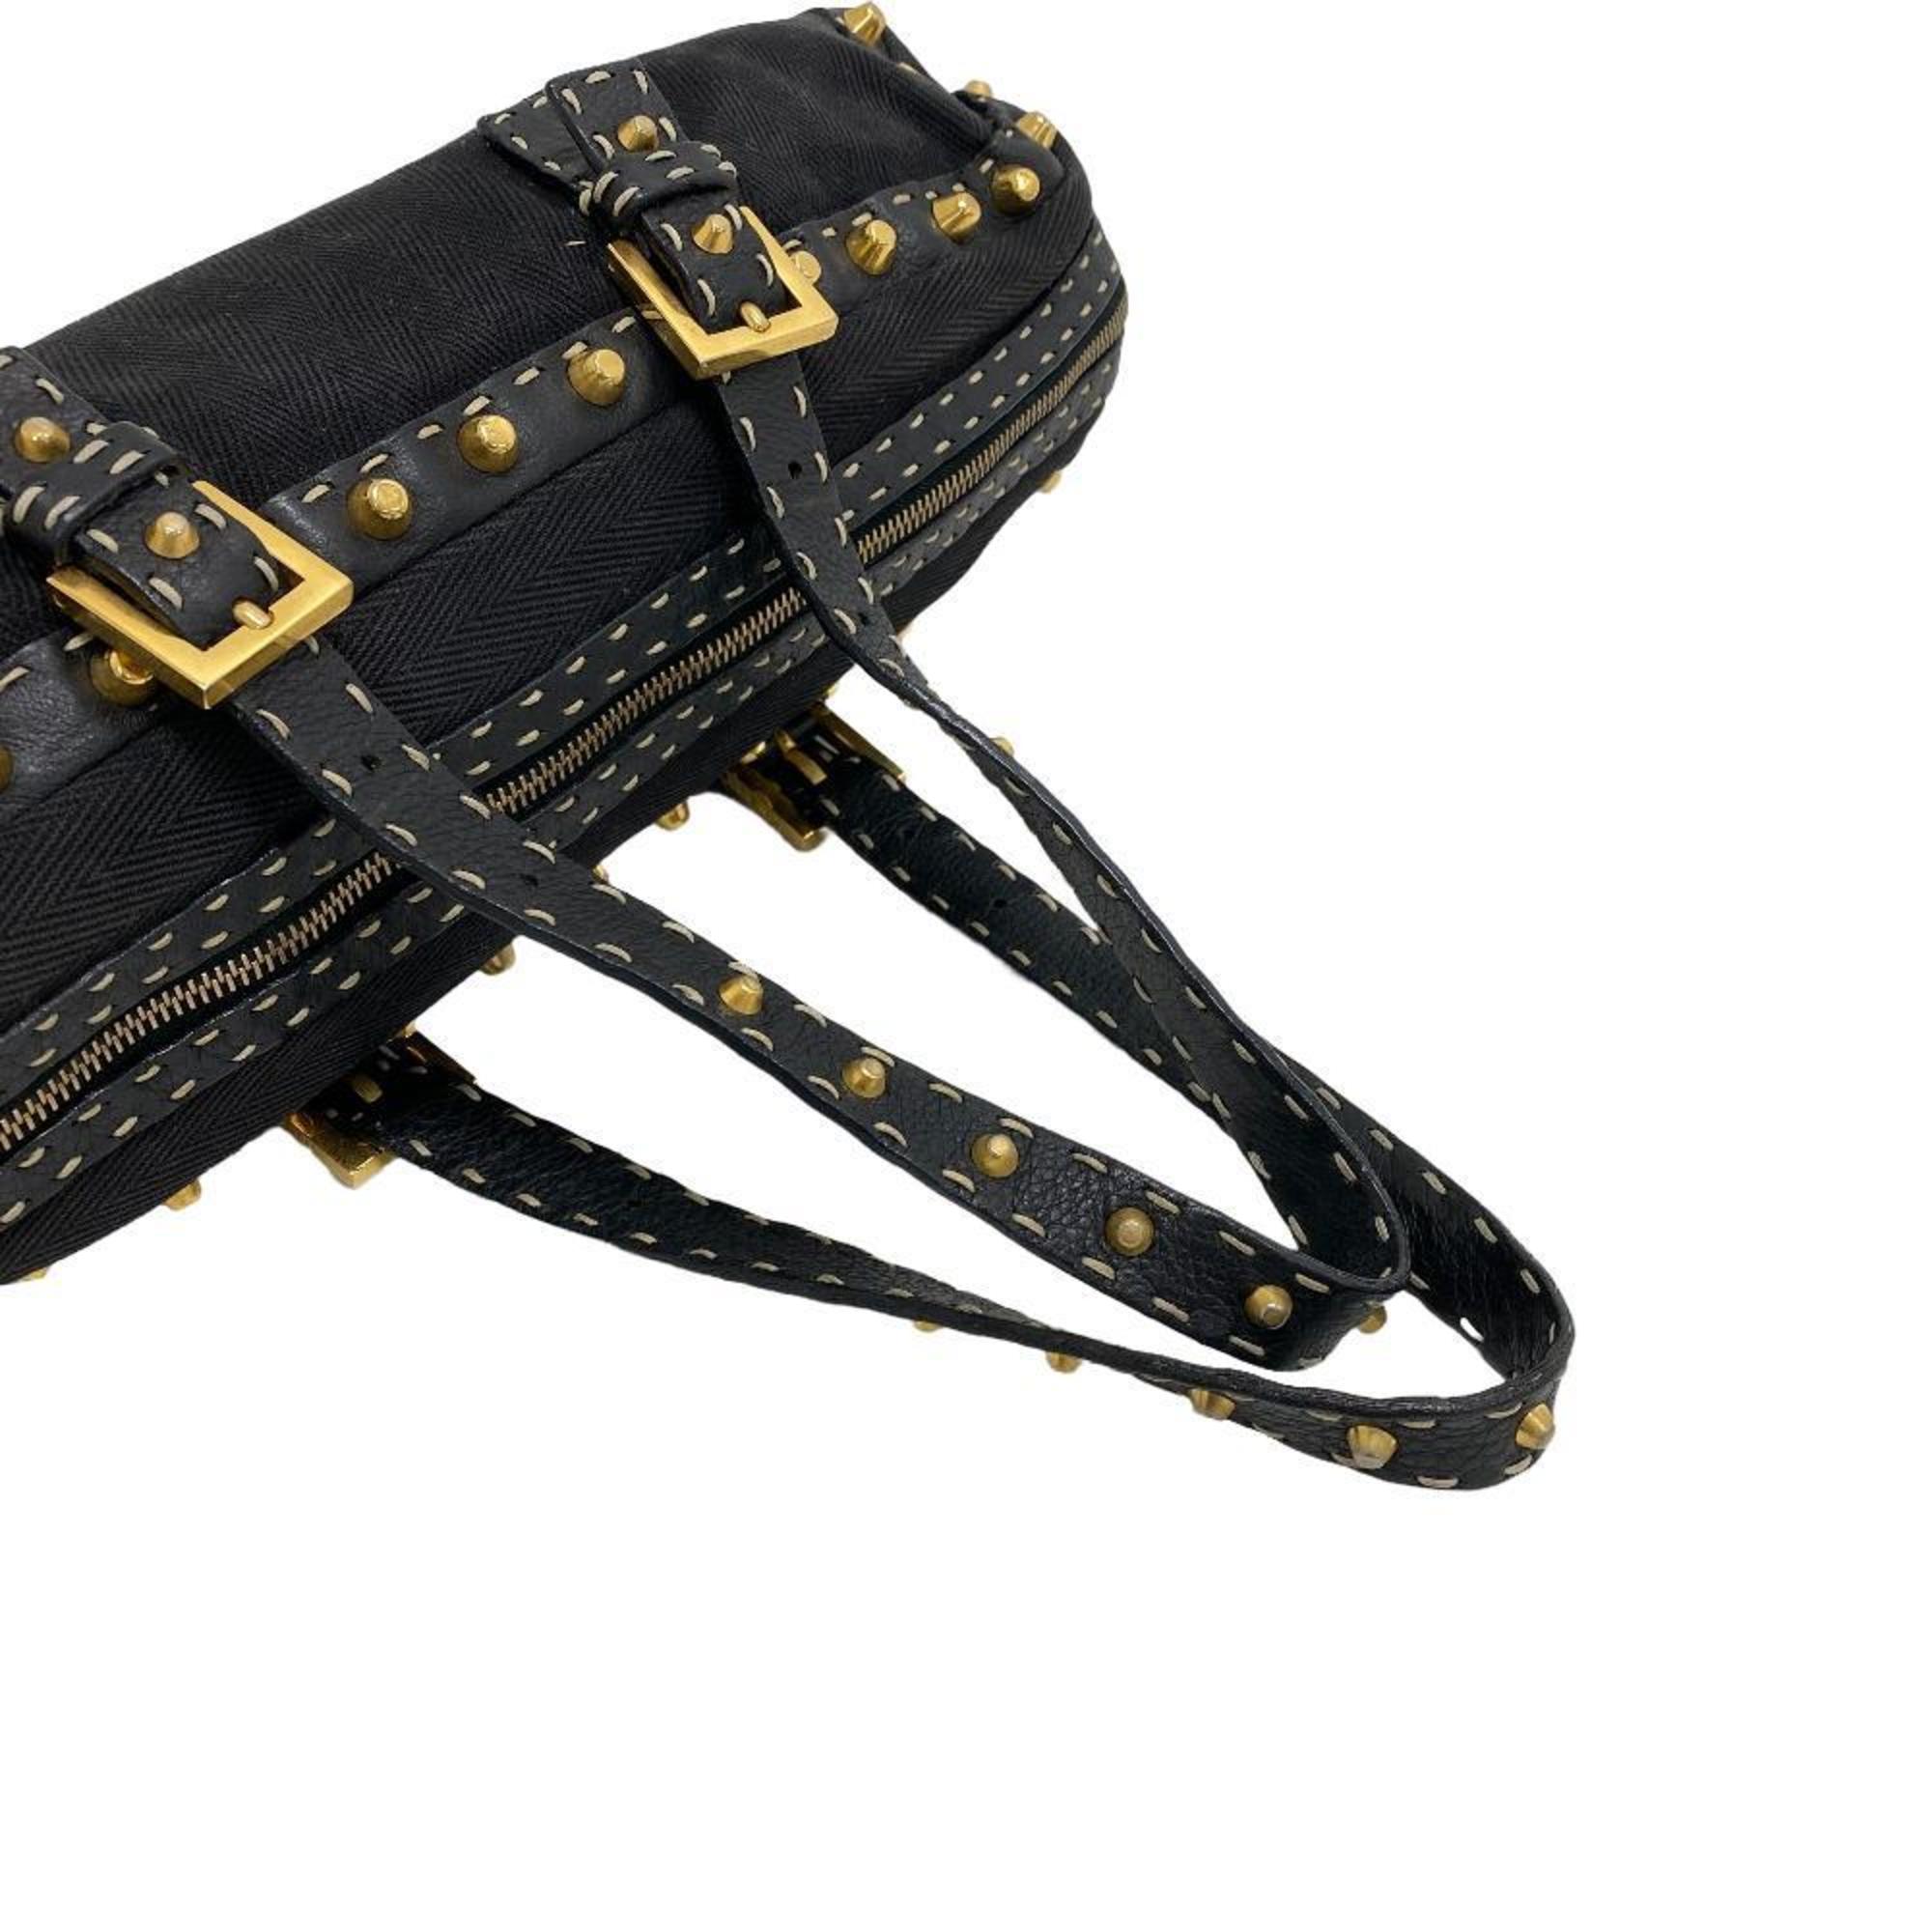 FENDI Selleria Handbag Black Women's Z0004900